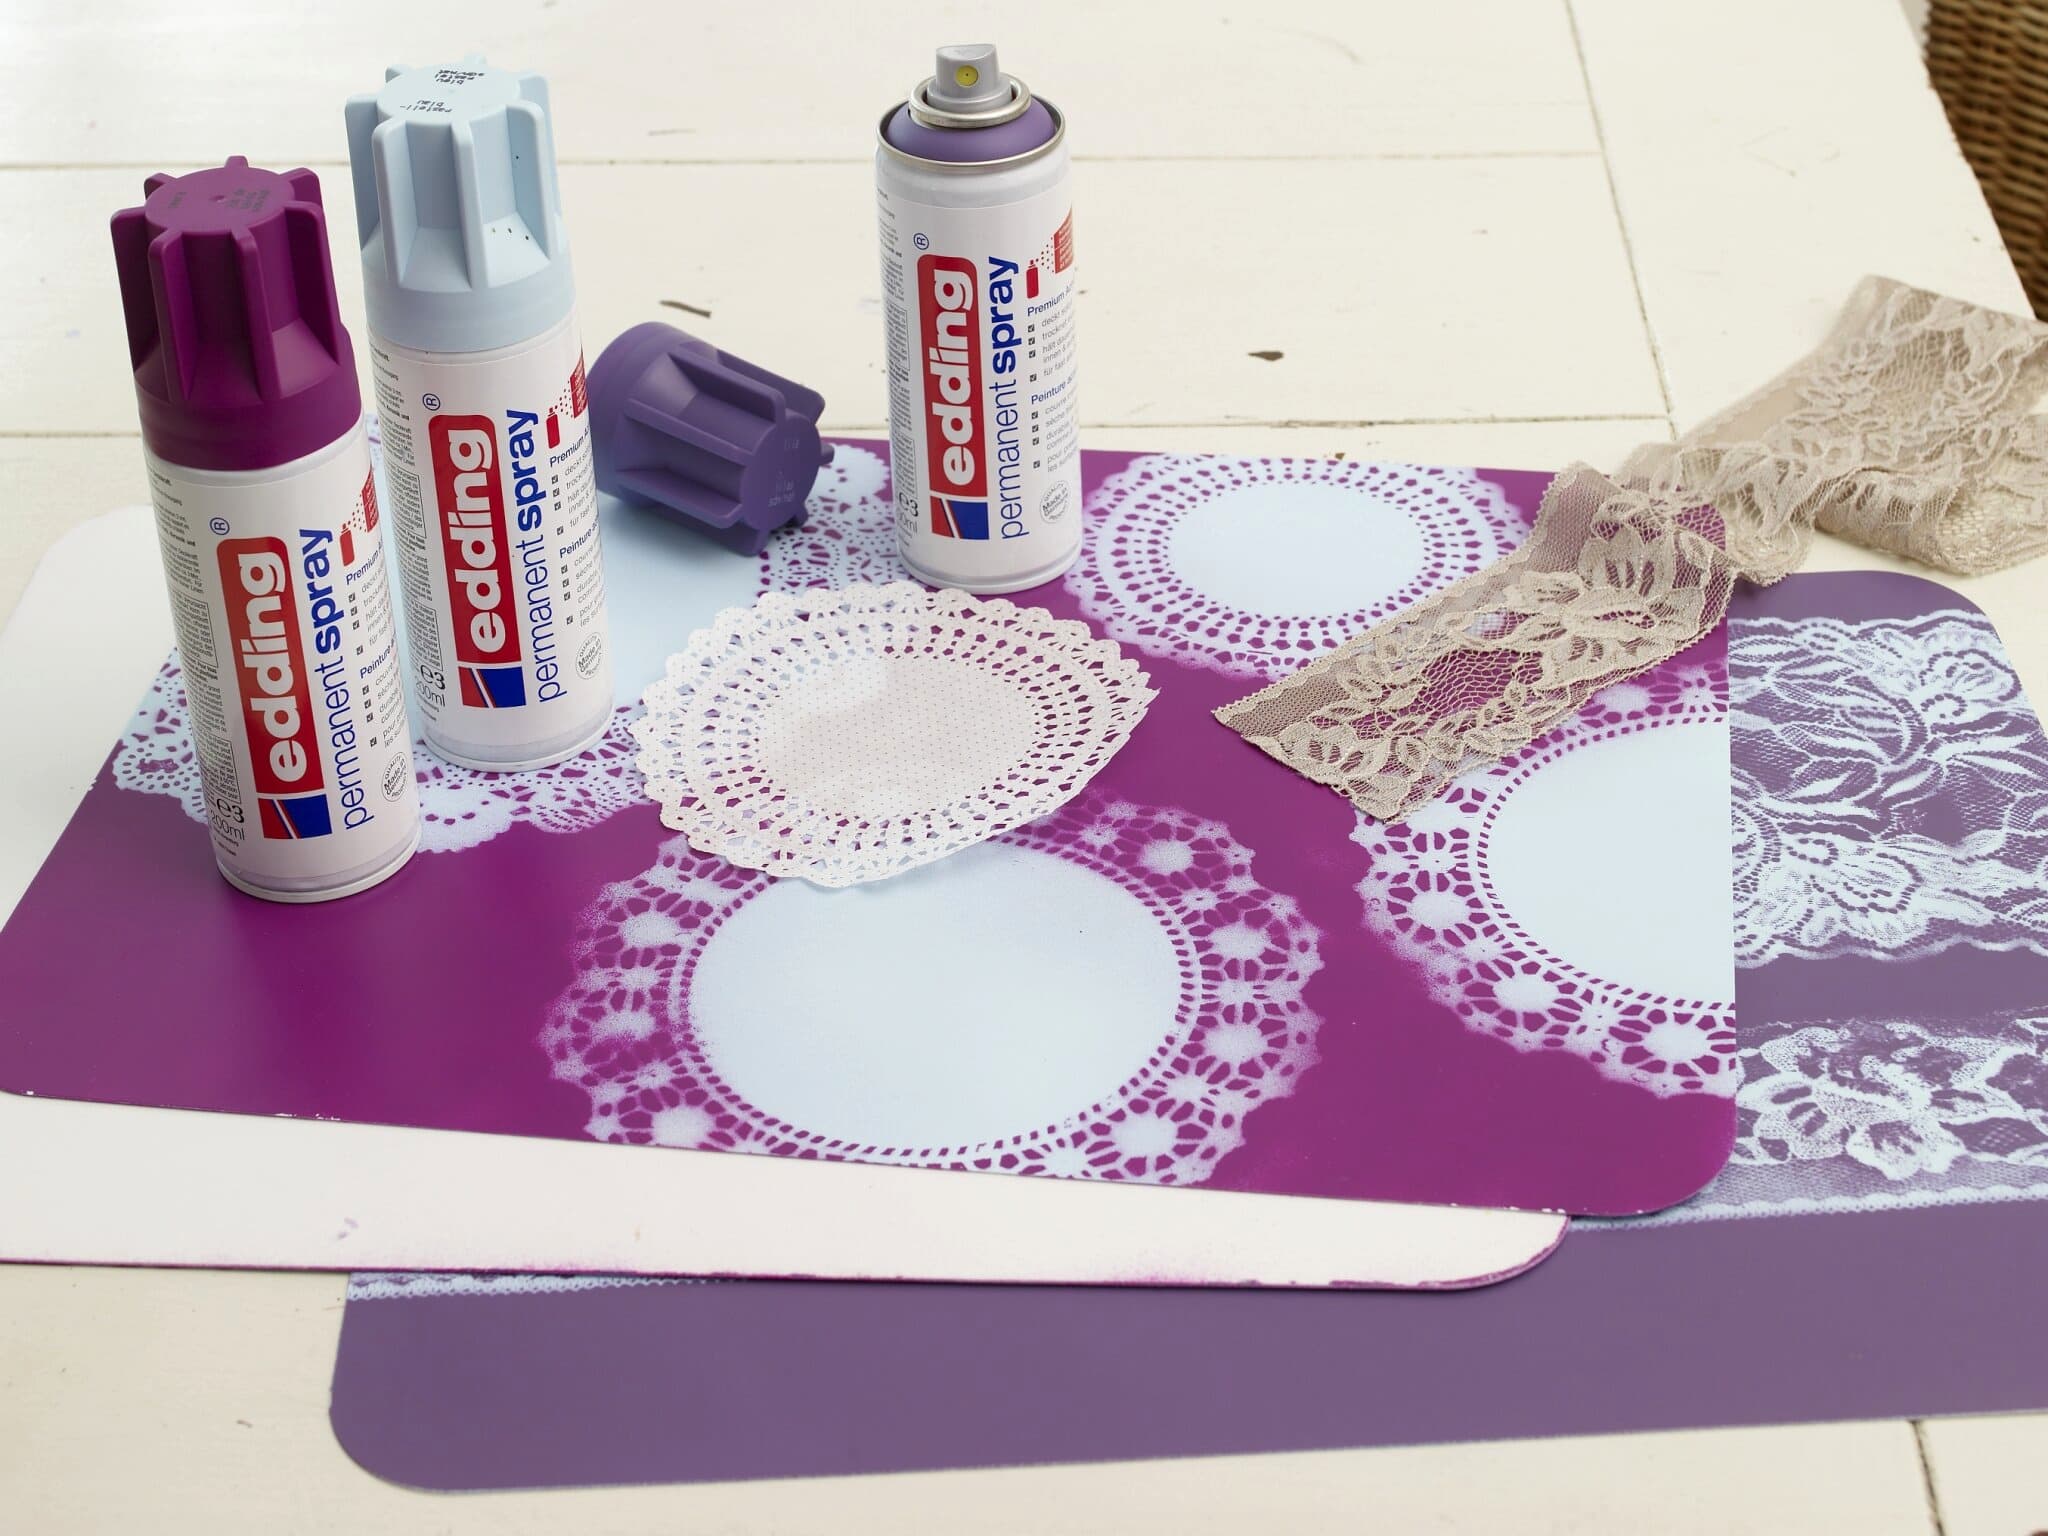 Laufendes DIY-Bastelprojekt mit edding 5200 Permanentspray Acryllack Neon & Kräftige Farben und Spitzenschablonen zum Erstellen komplizierter Muster auf Papier.